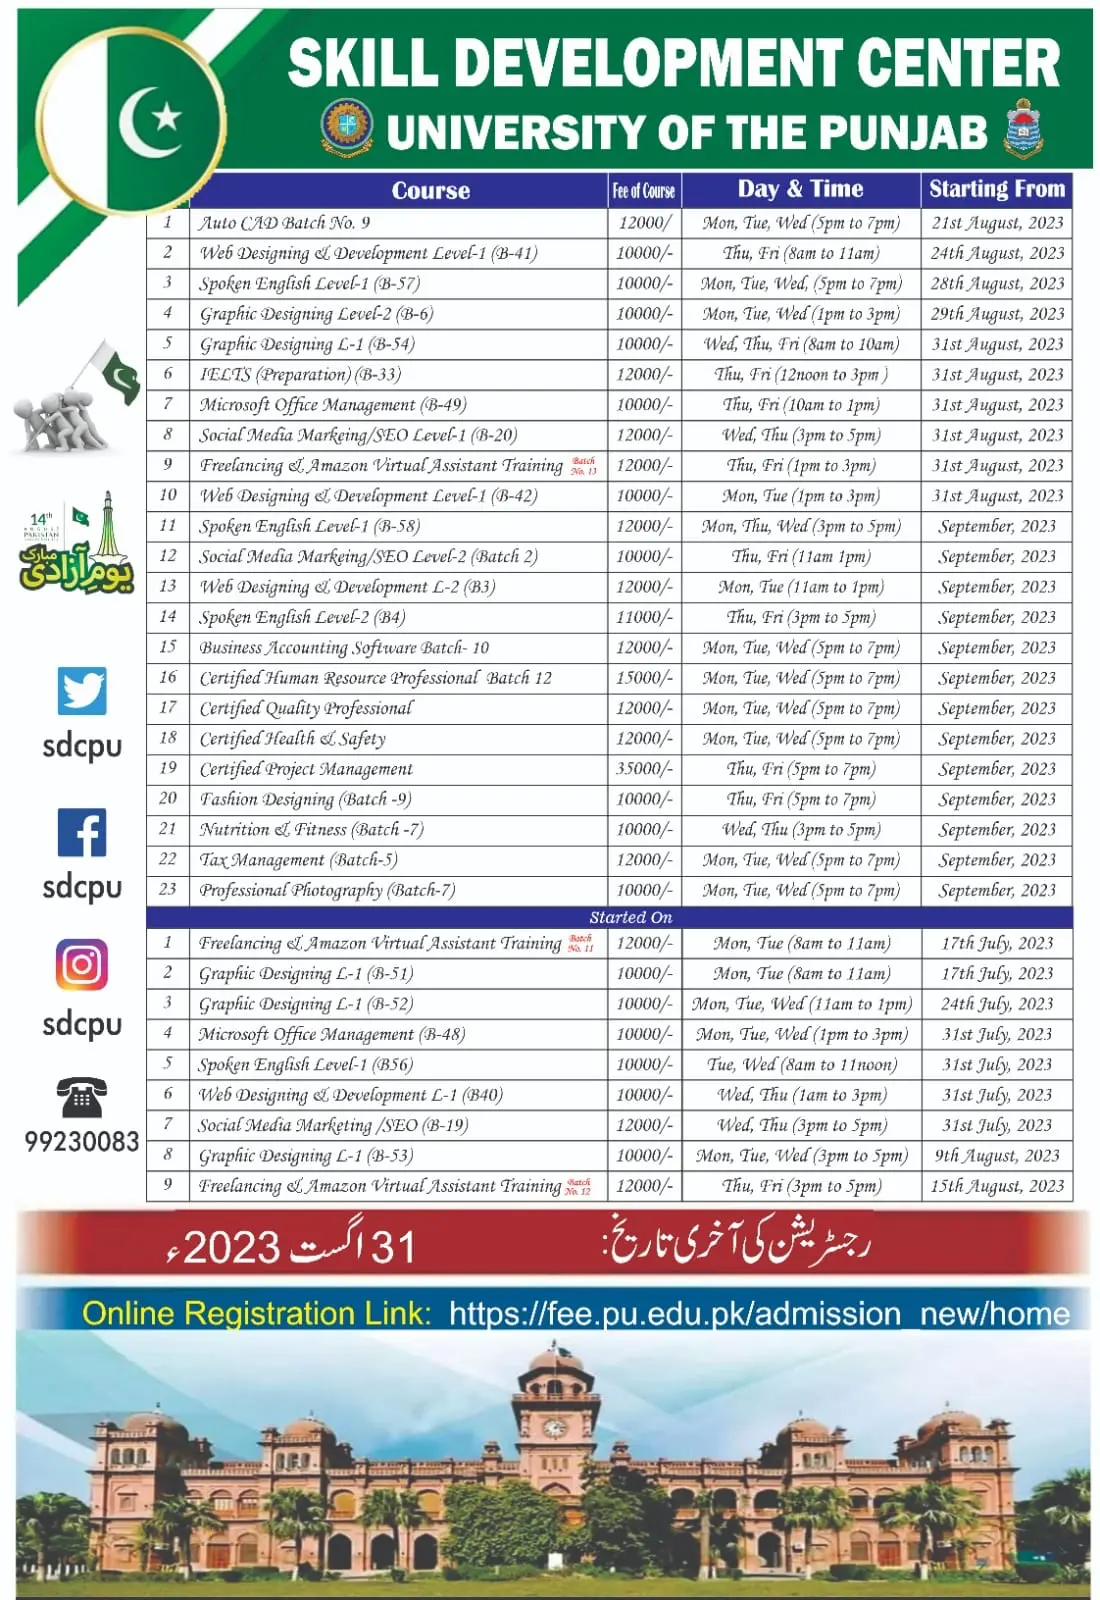 Punjab University Lahore Skill Development Courses 2023.webp